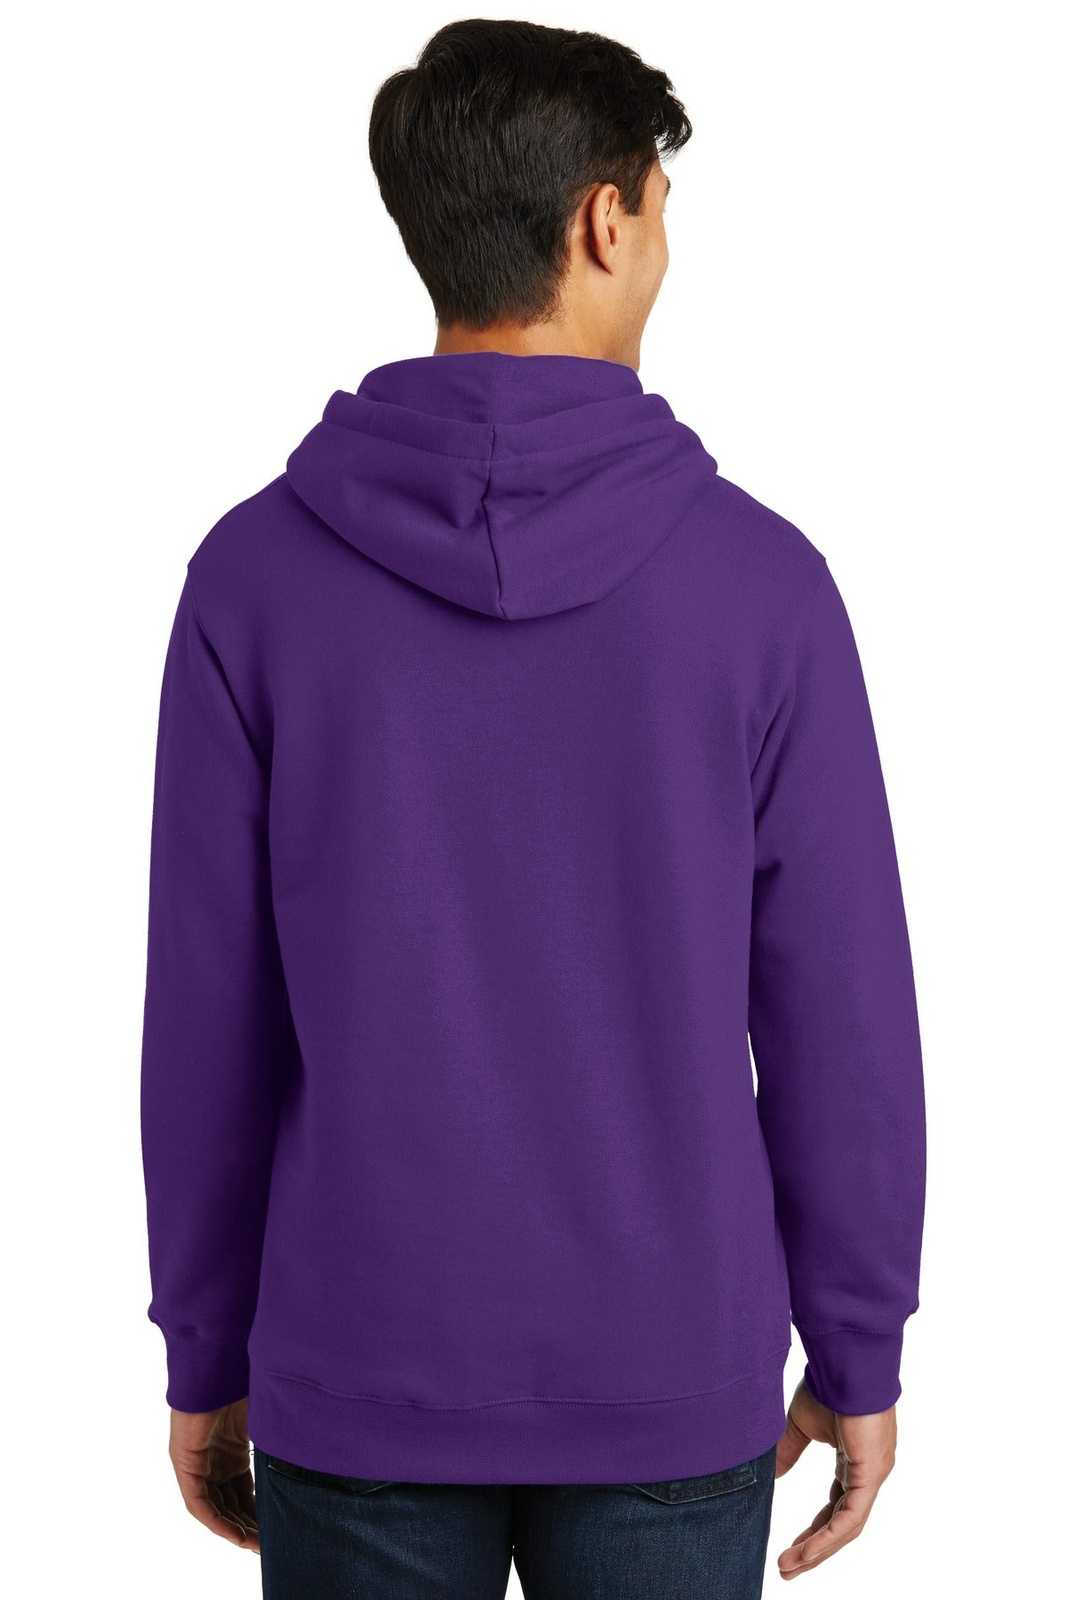 Port &amp; Company PC850H Fan Favorite Fleece Pullover Hooded Sweatshirt - Team Purple - HIT a Double - 2